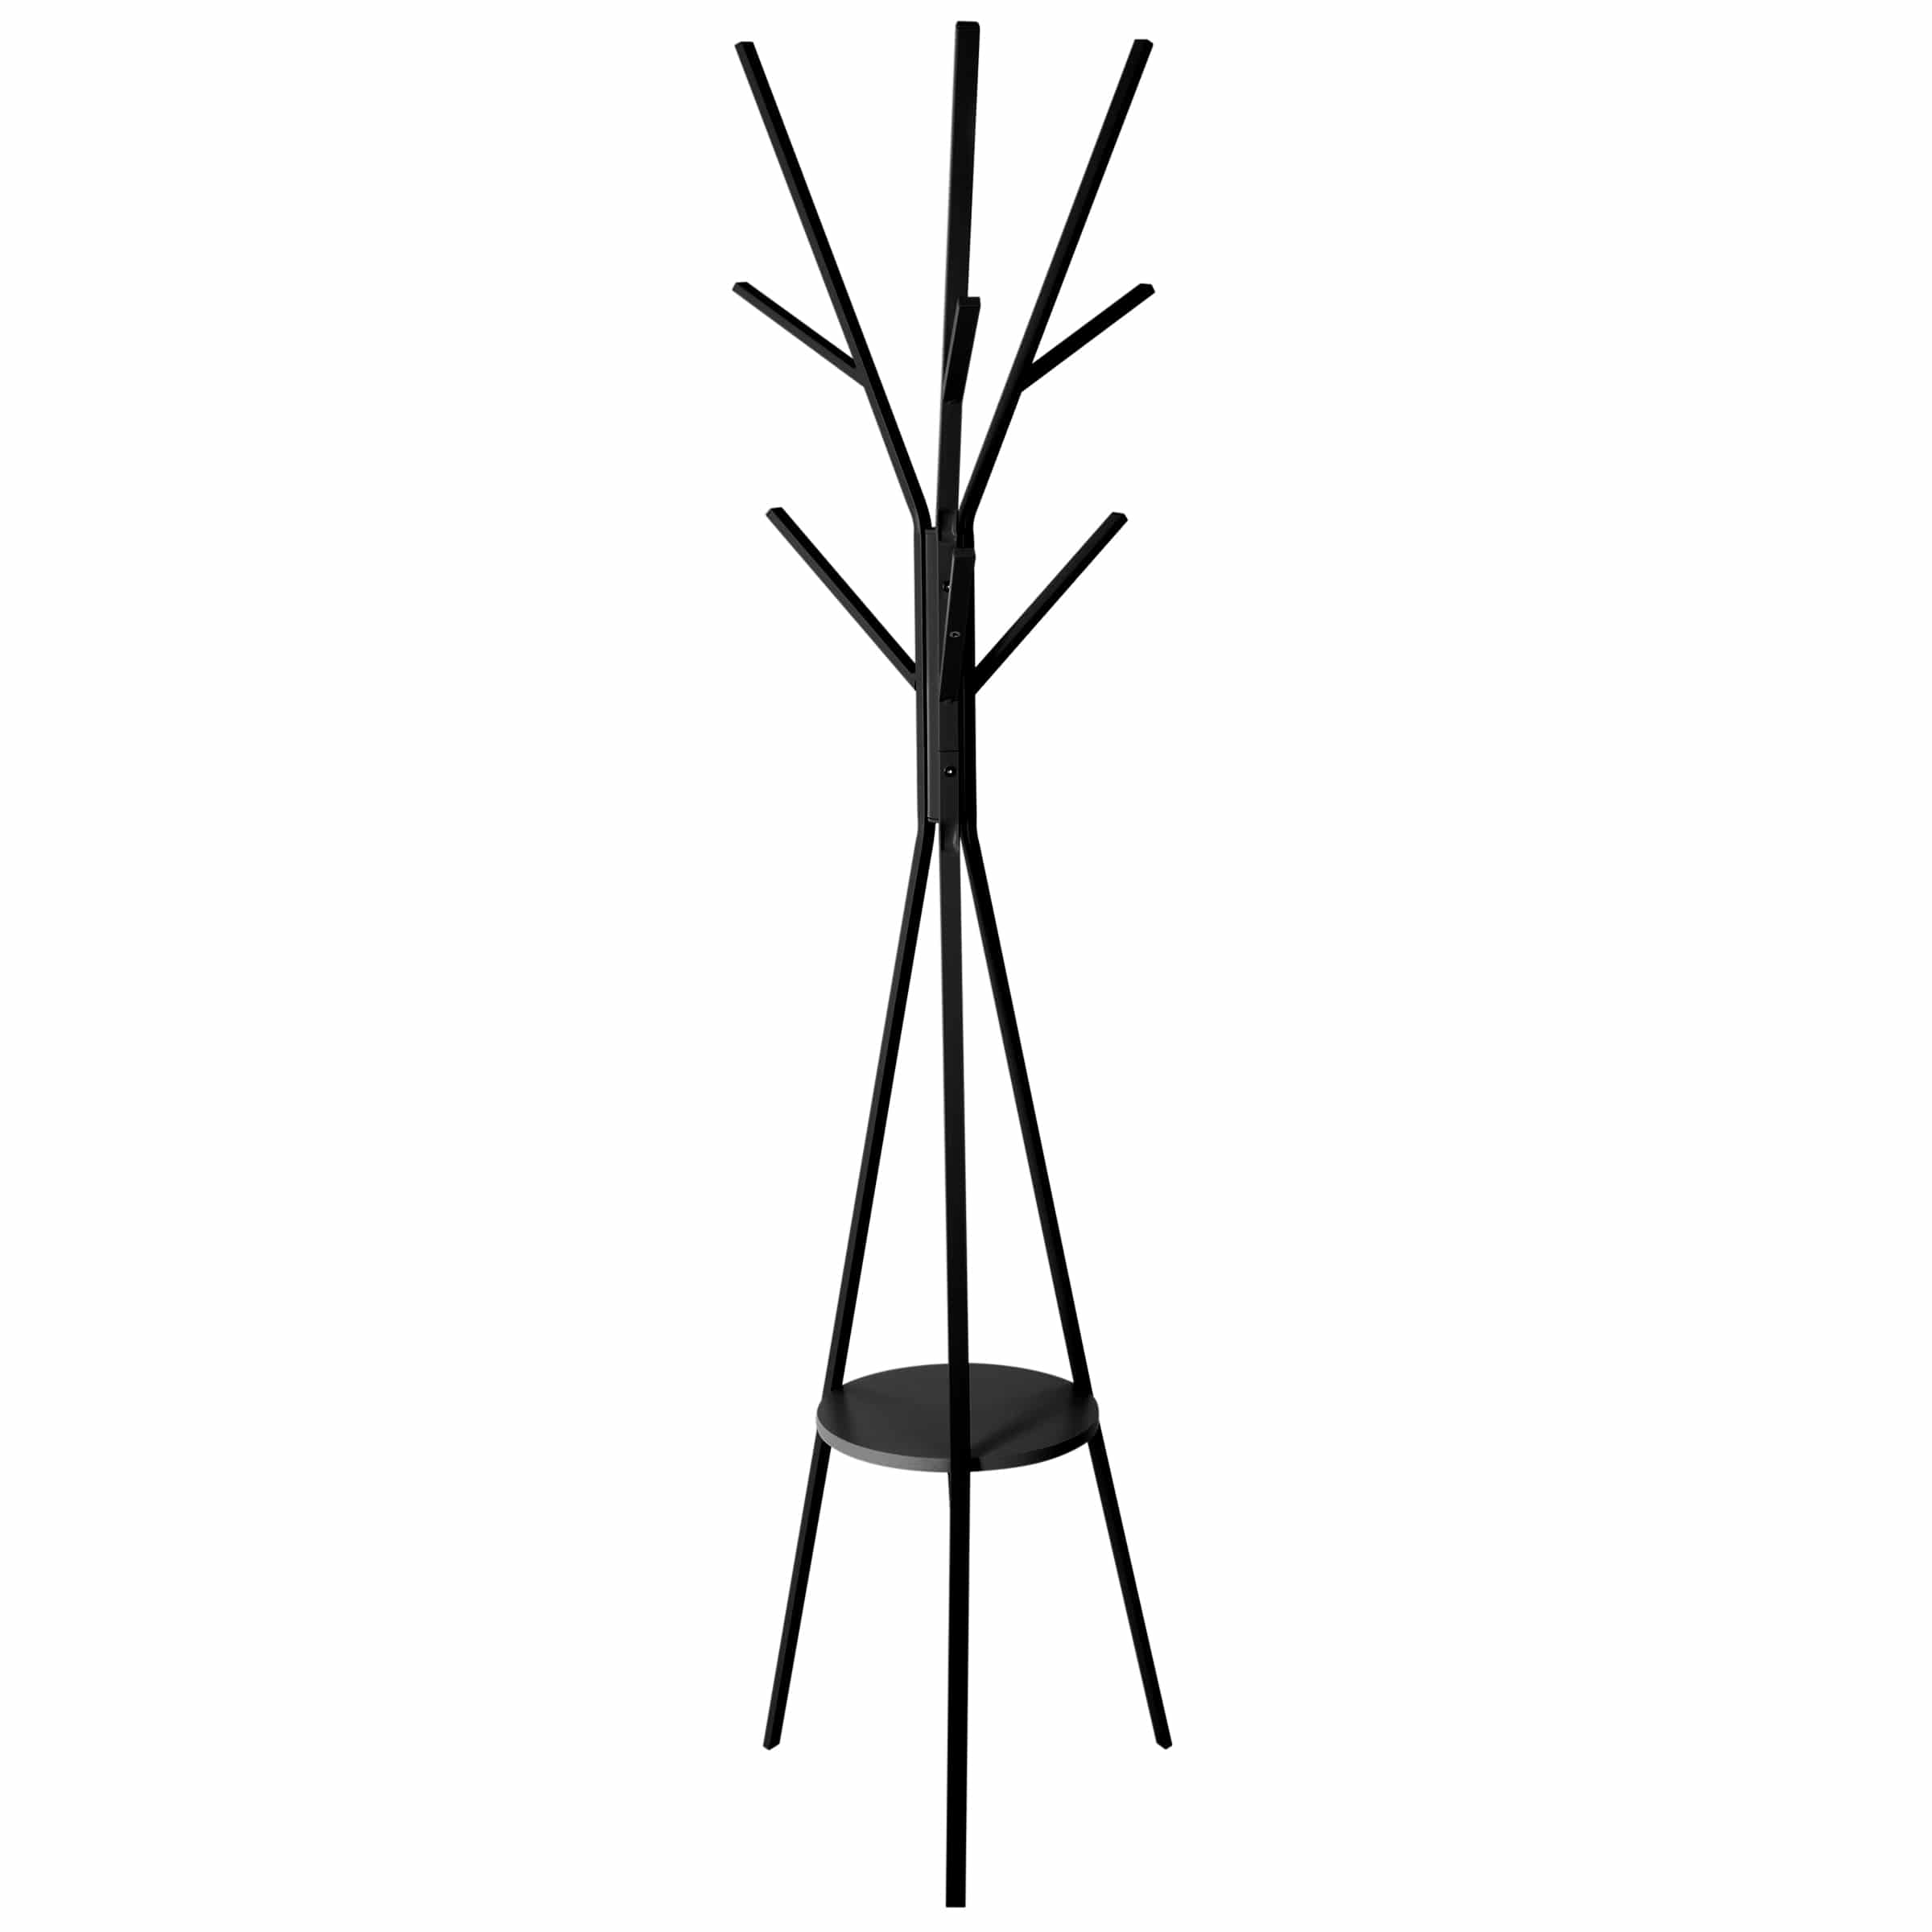 5Five Staande kleerhanger - Kapstok 9 Haken - Zwart - 180 cm